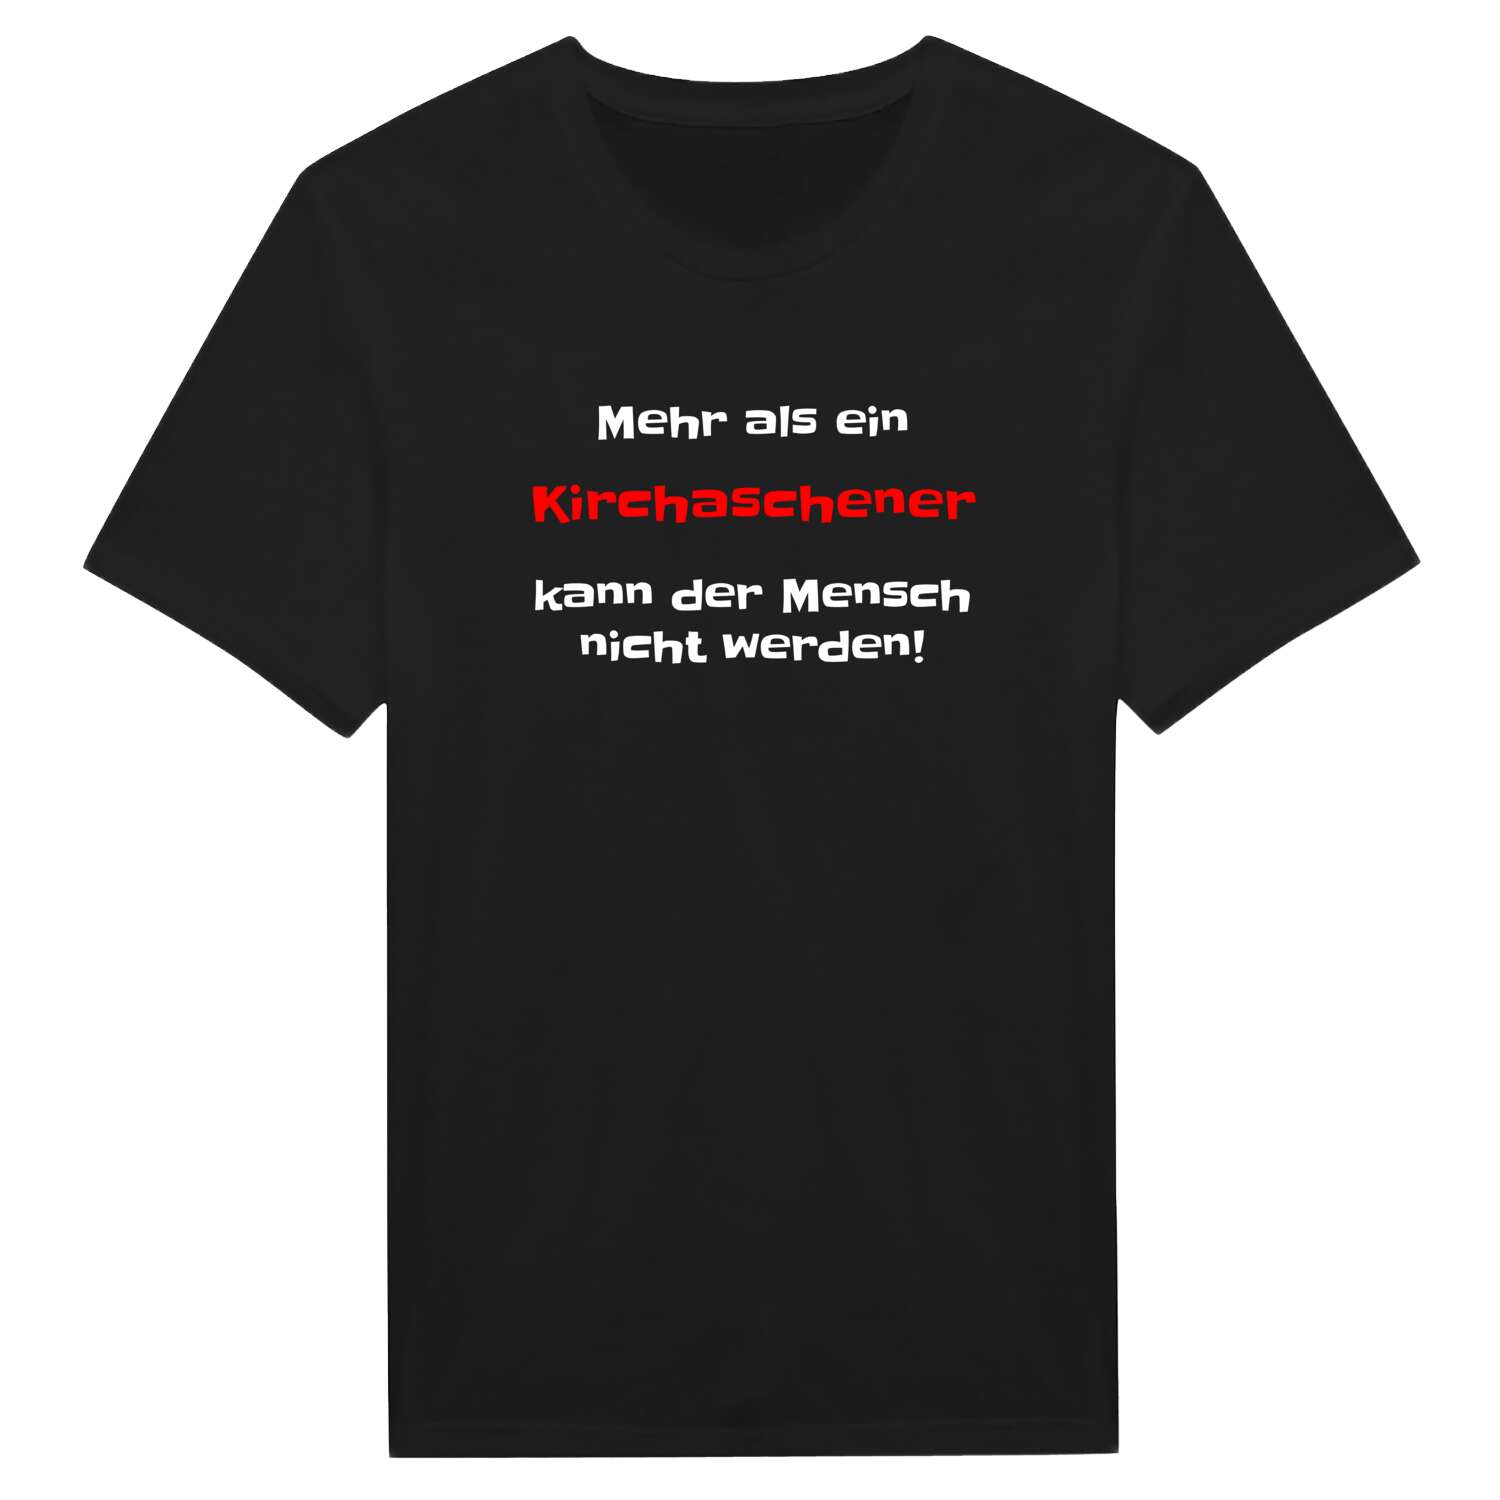 Kirchasch T-Shirt »Mehr als ein«